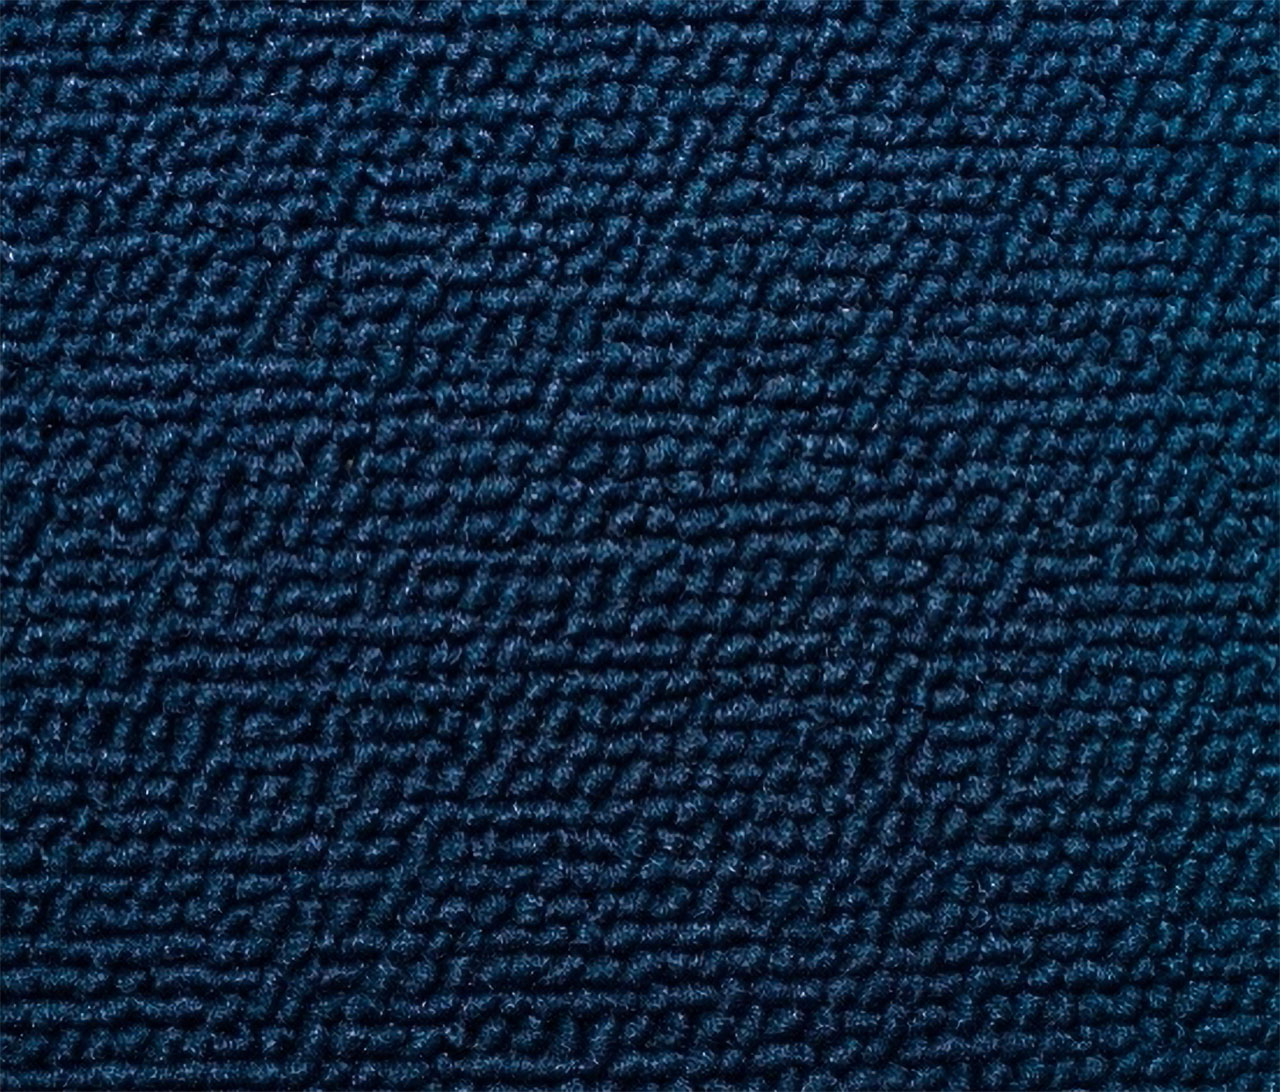 Holden Standard EH Standard Panel Van C49 Columbine Blue Carpet (Image 1 of 1)